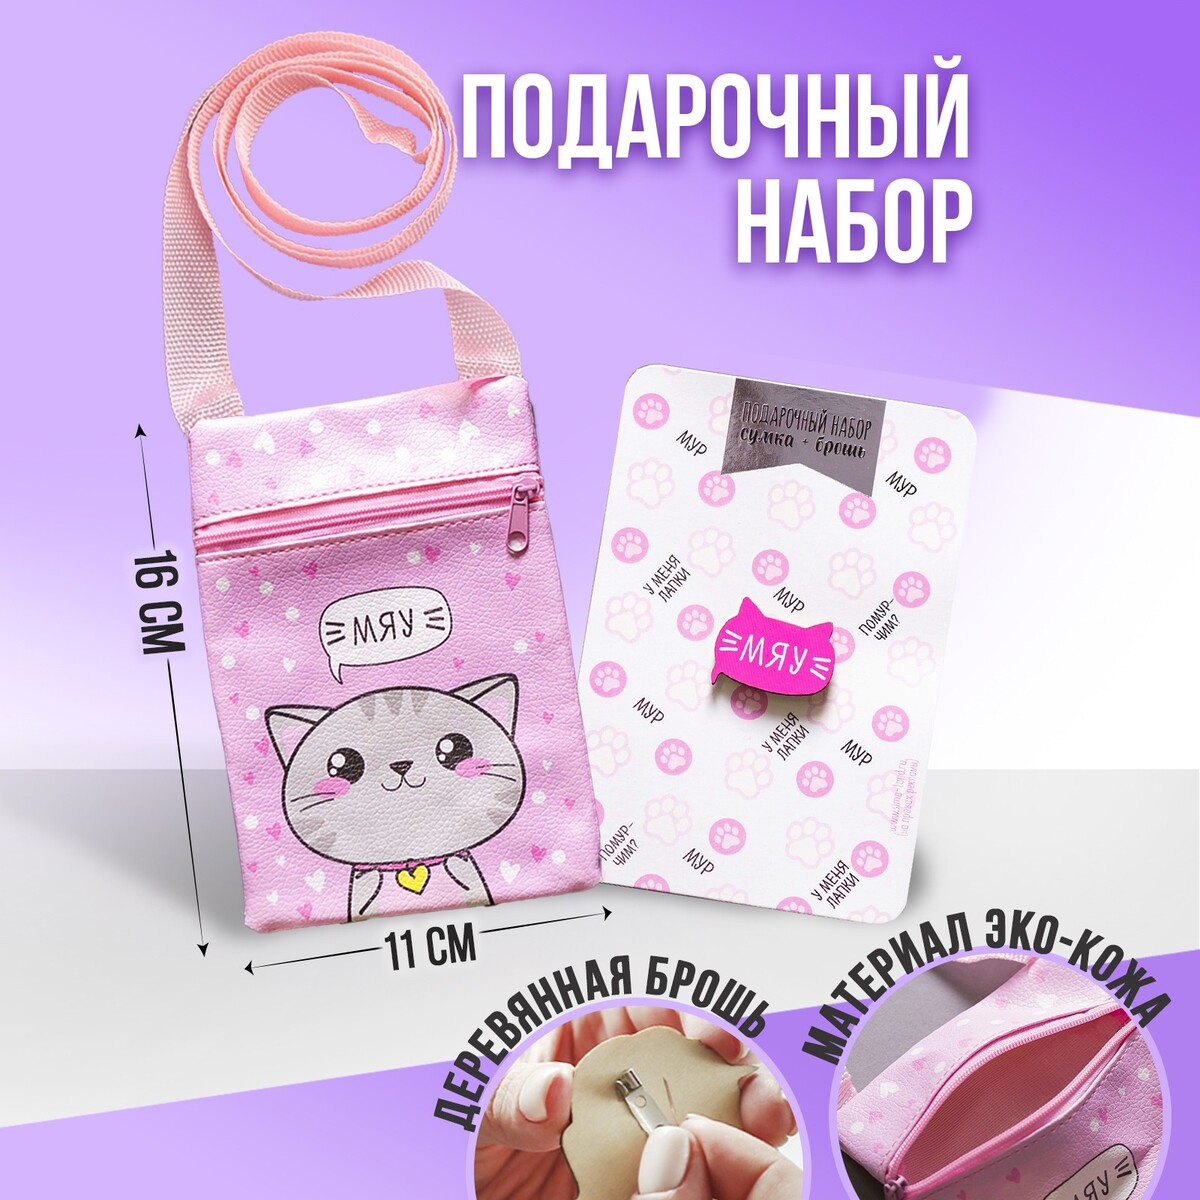 Детский подарочный набор мяу: сумка+брошь, цвет розовый